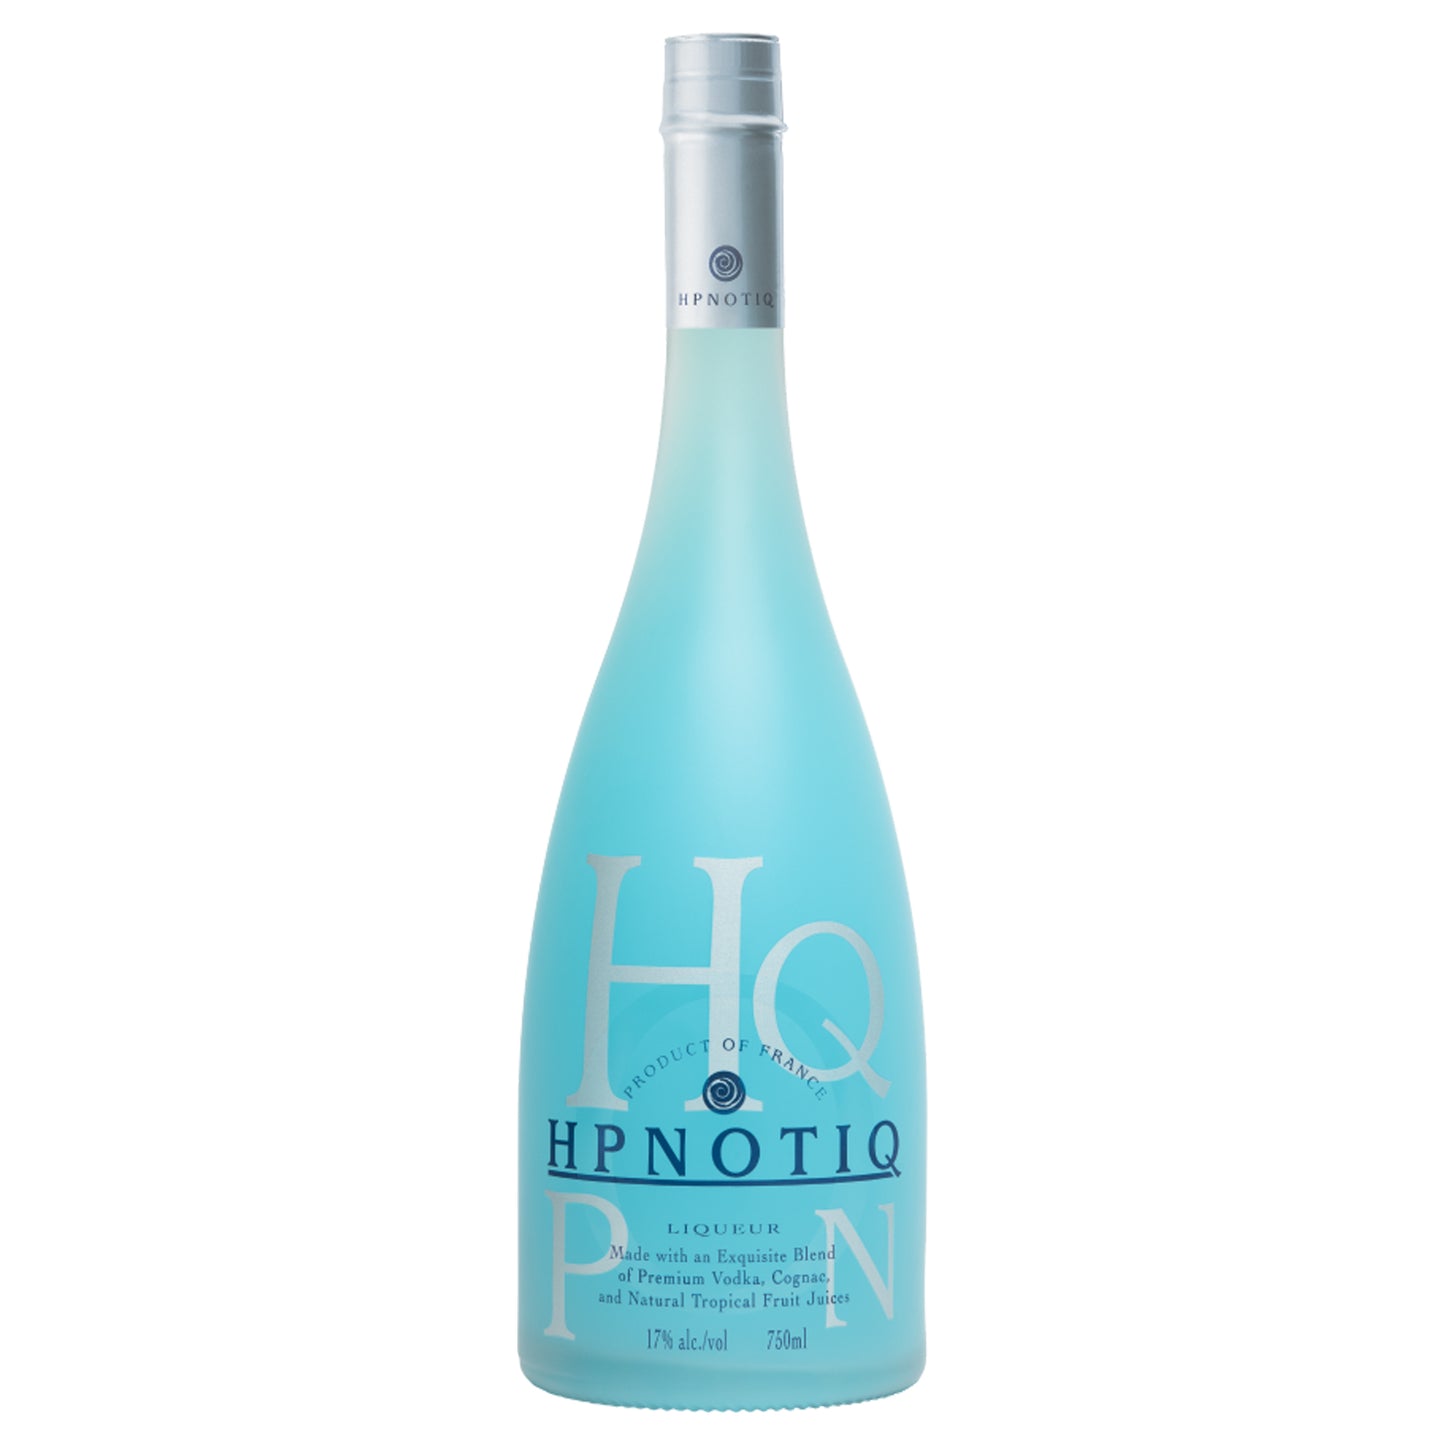 Hpnotiq Original Liqueur